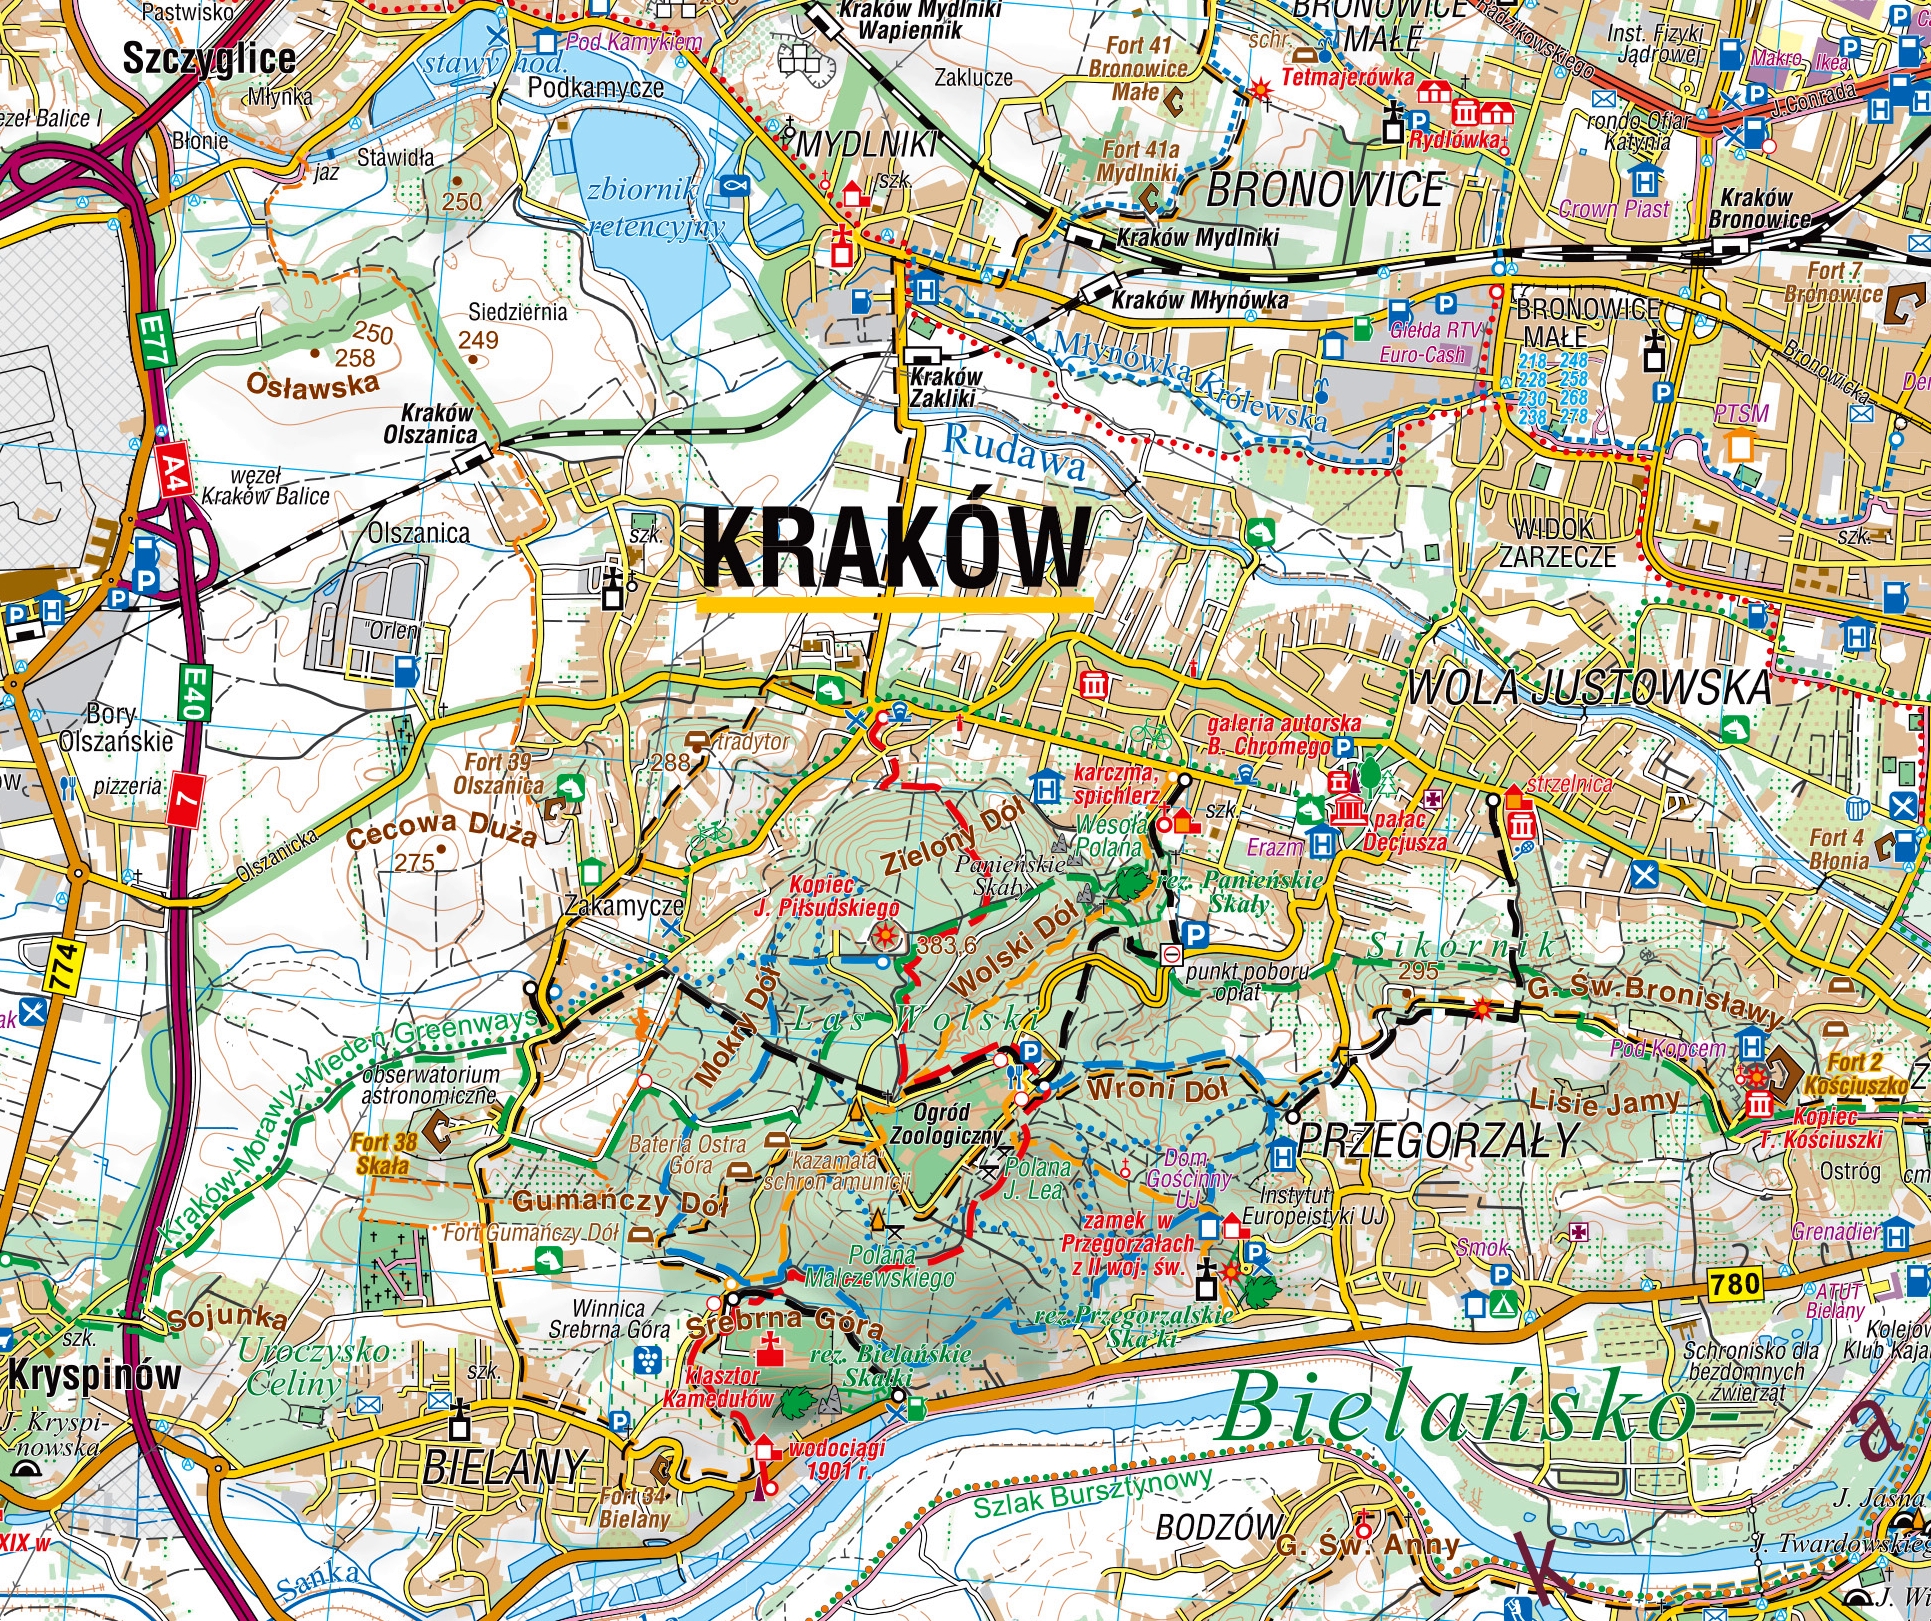 Krakow region